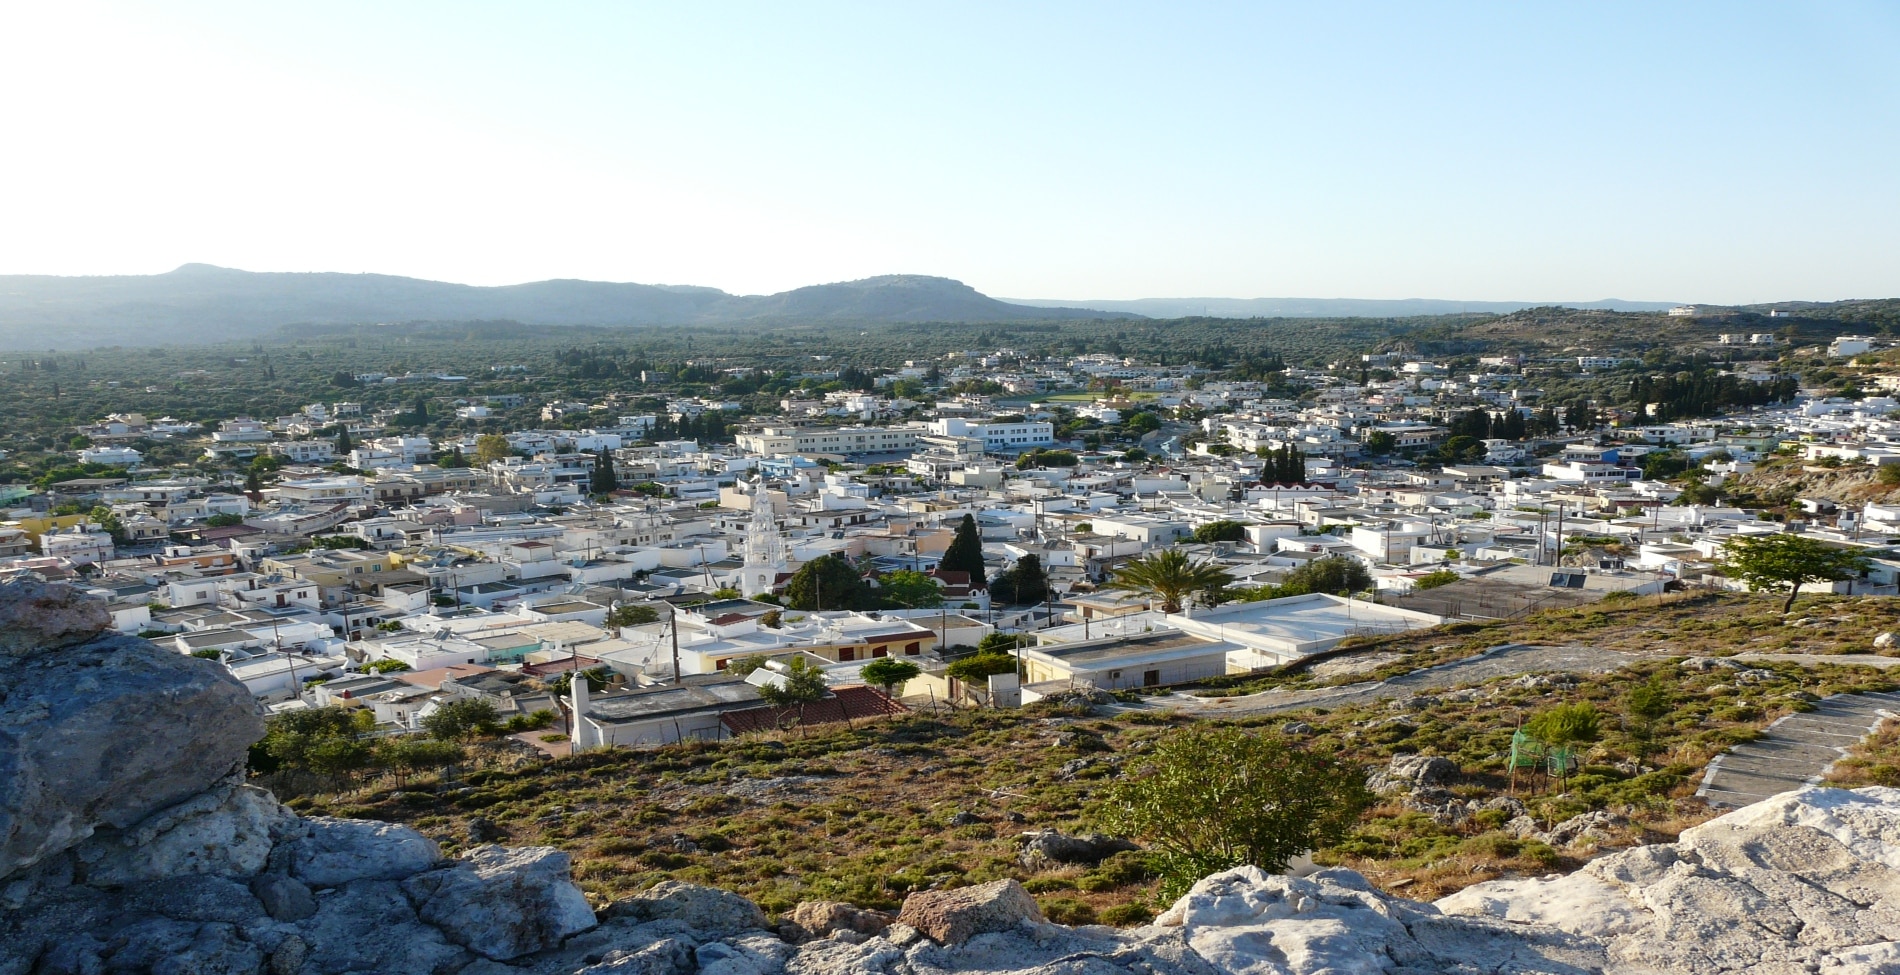 Το ελληνικό χωριό που έχει τη δική του ξεχωριστή διάλεκτο